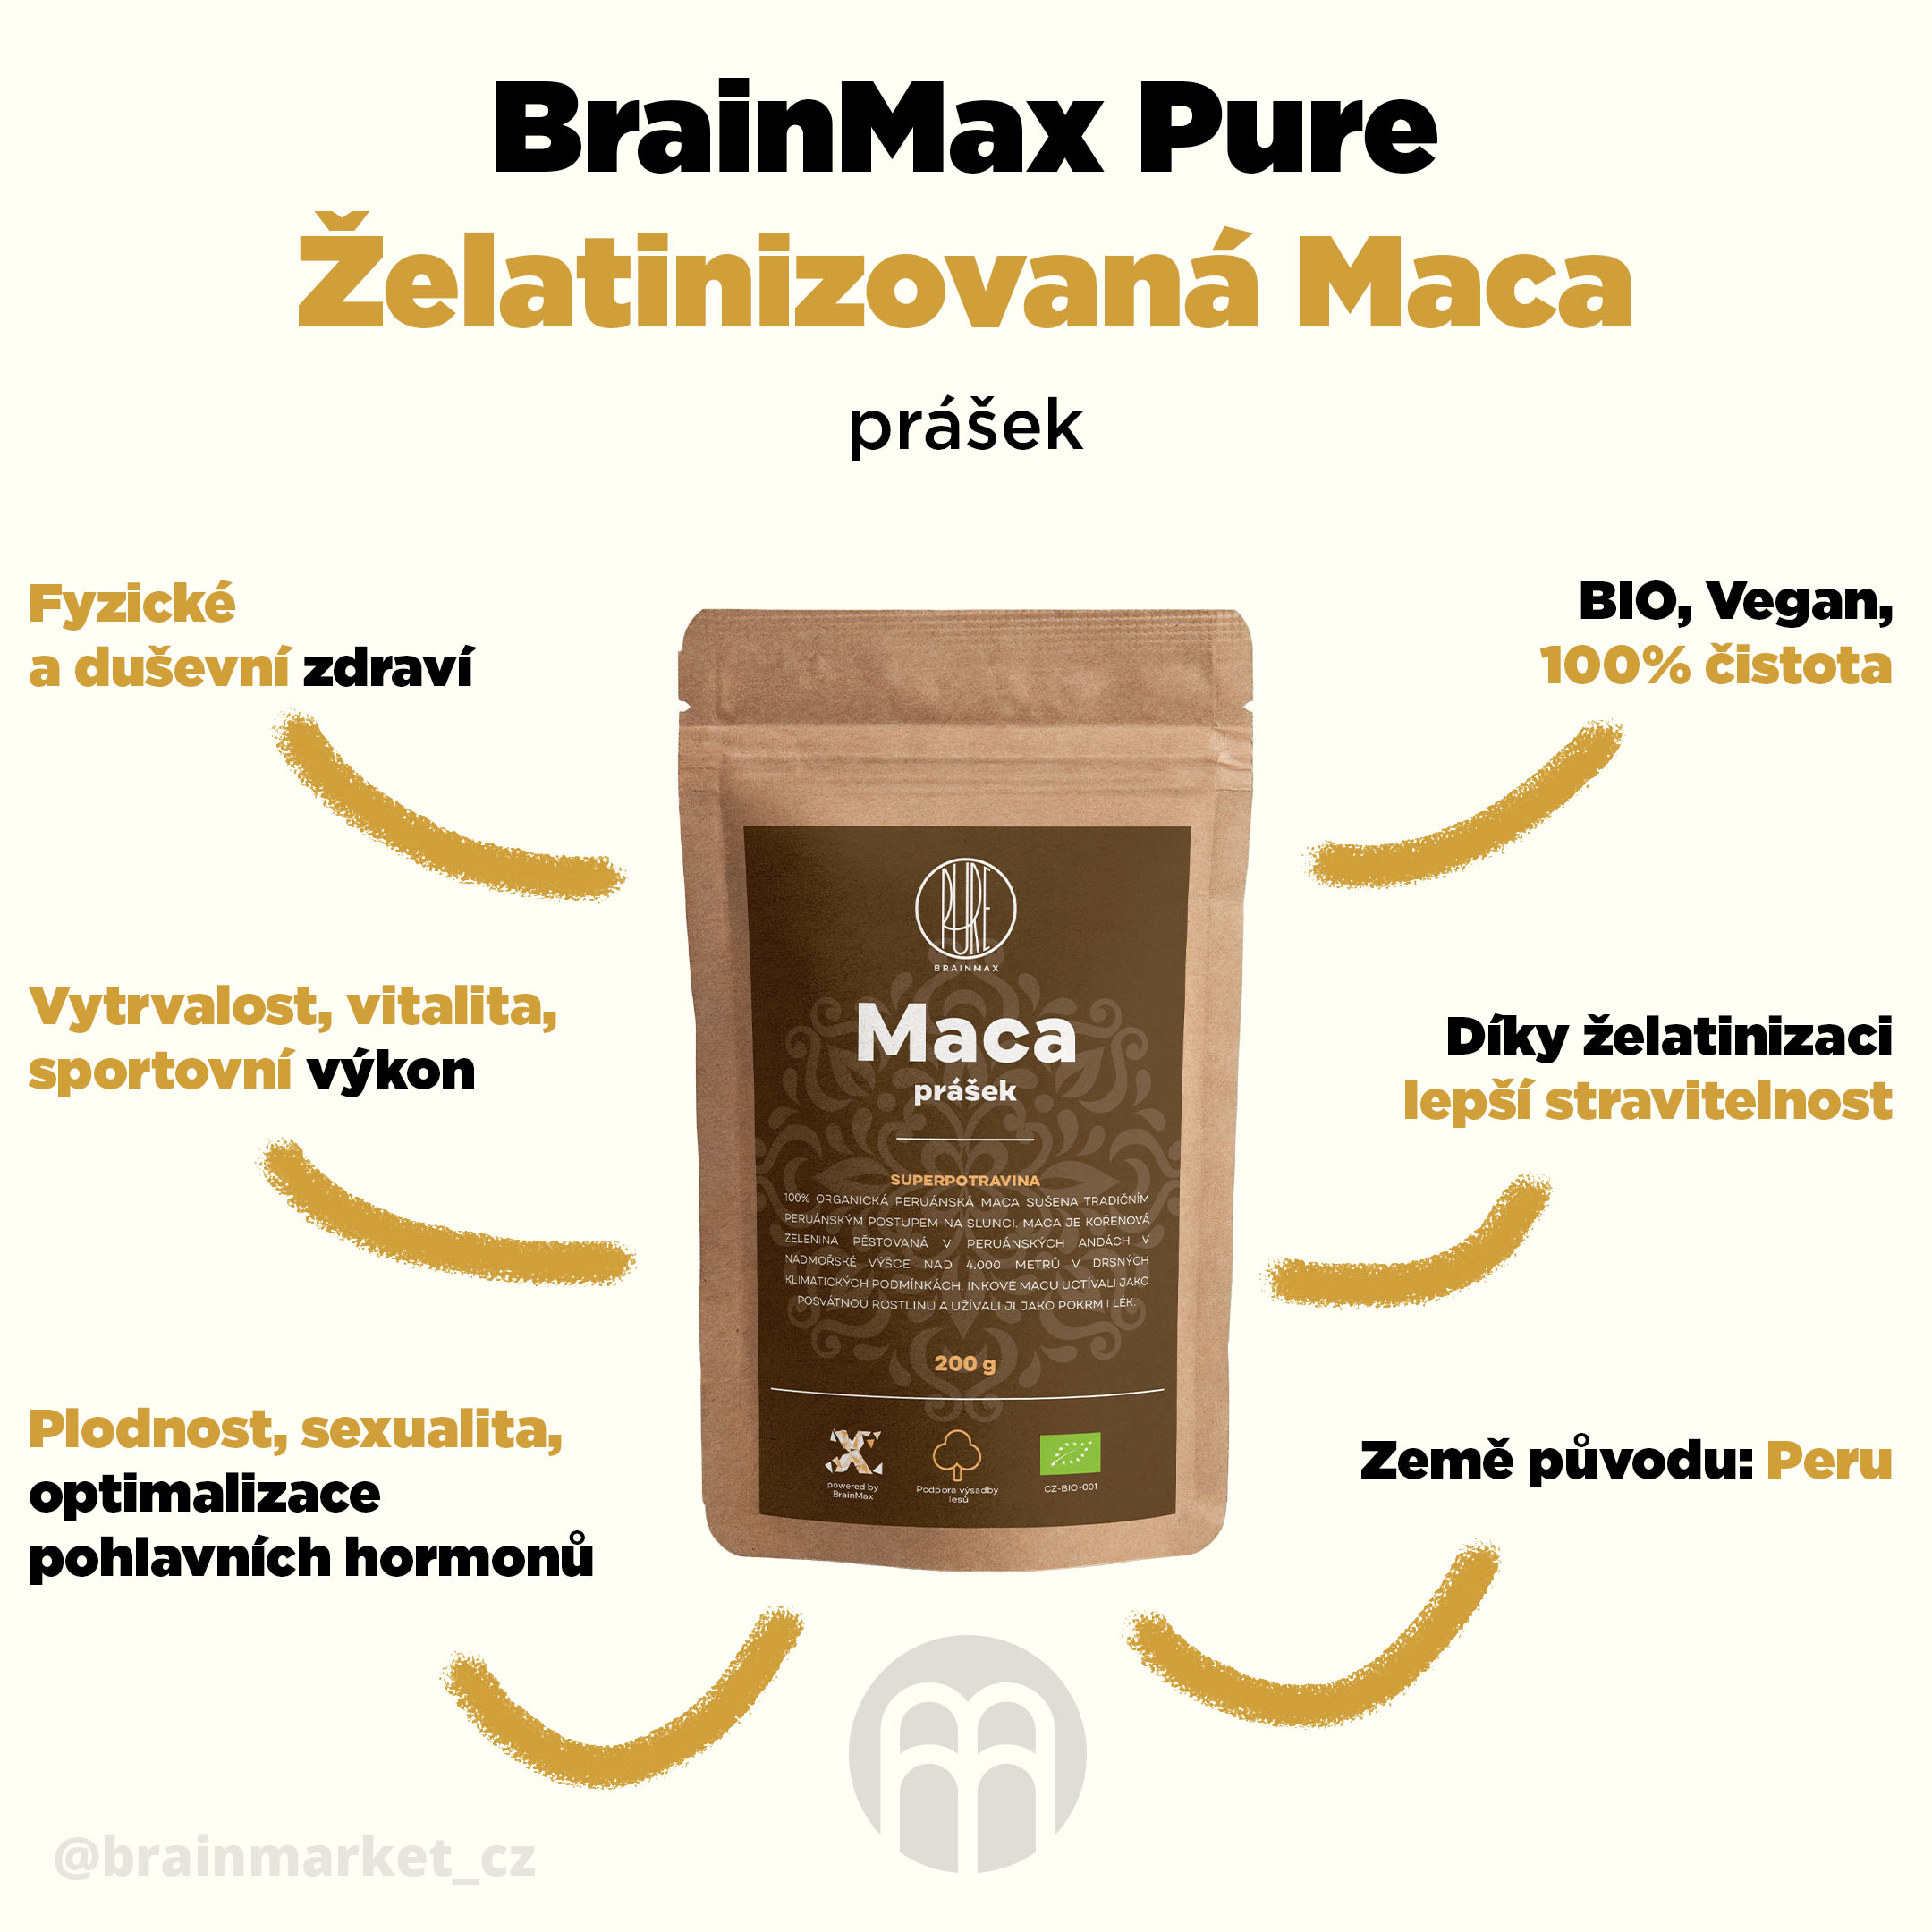 maca_prinosy_infografika_brainmarket_CZ